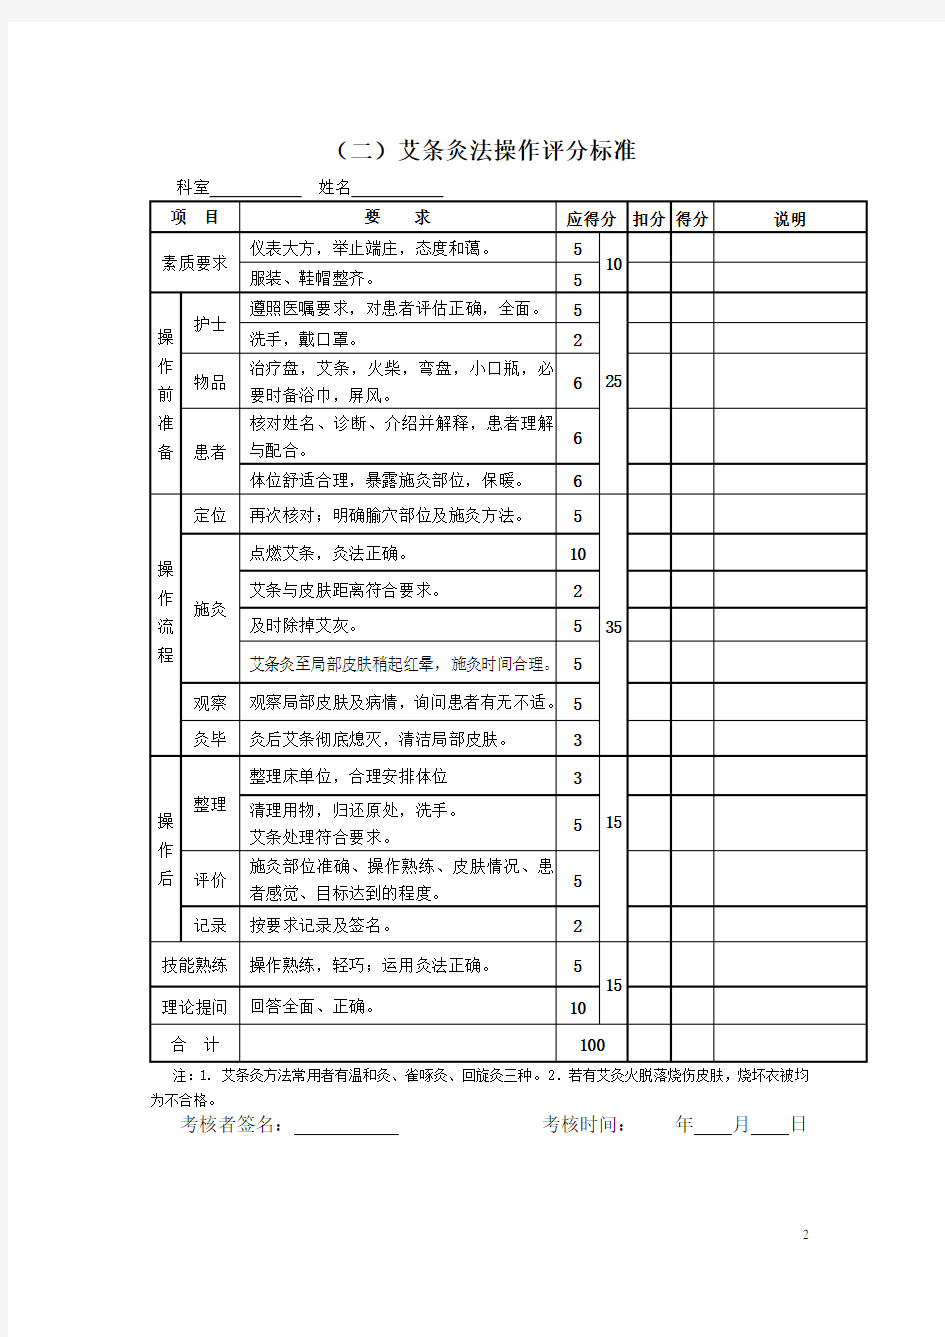 中医技术操作8项考核标准(1)